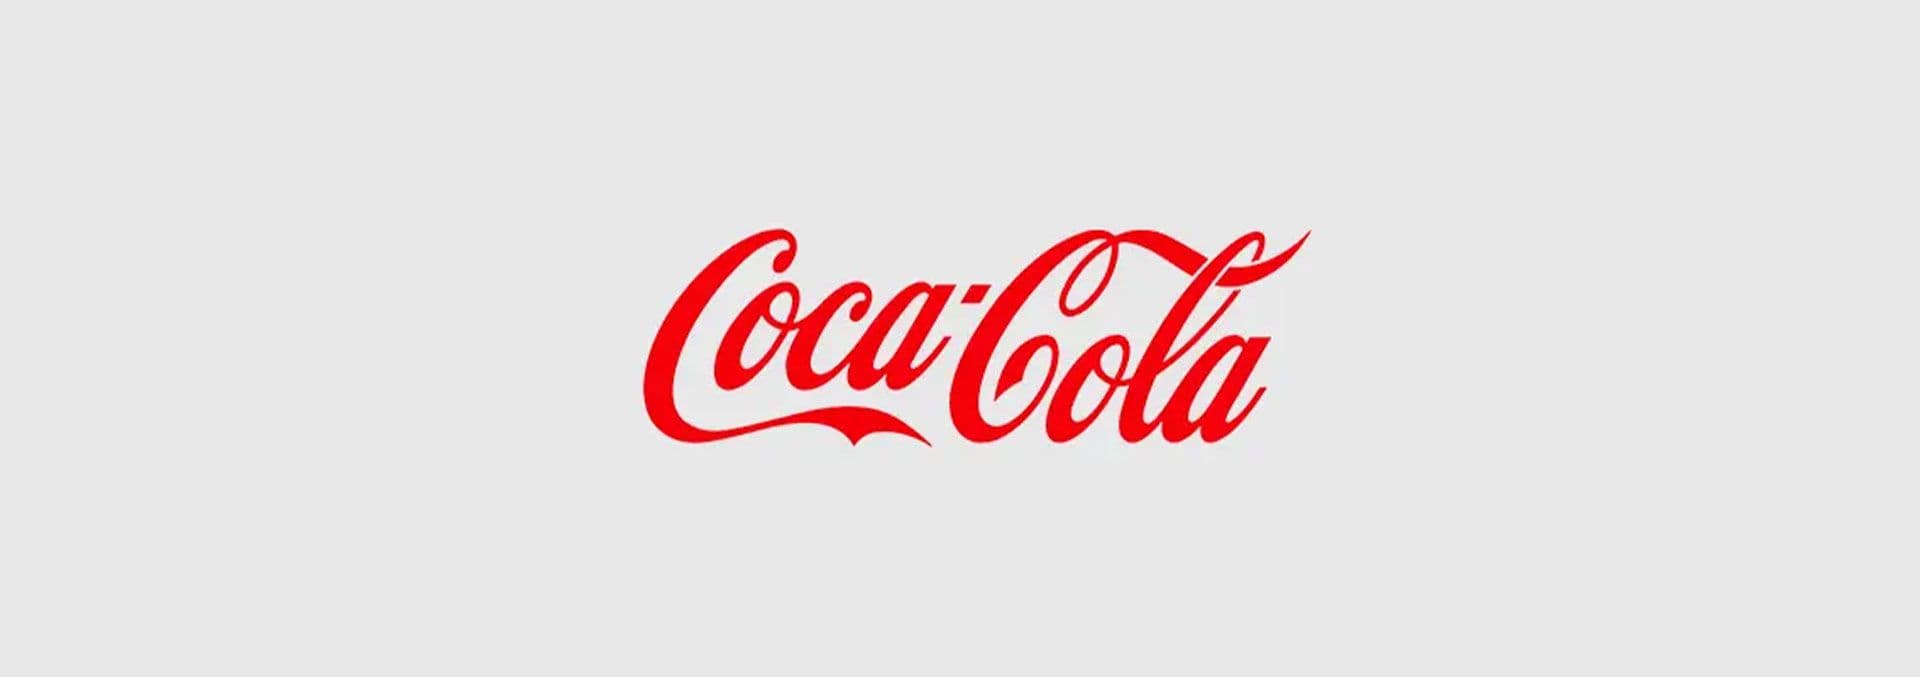  CocaCola